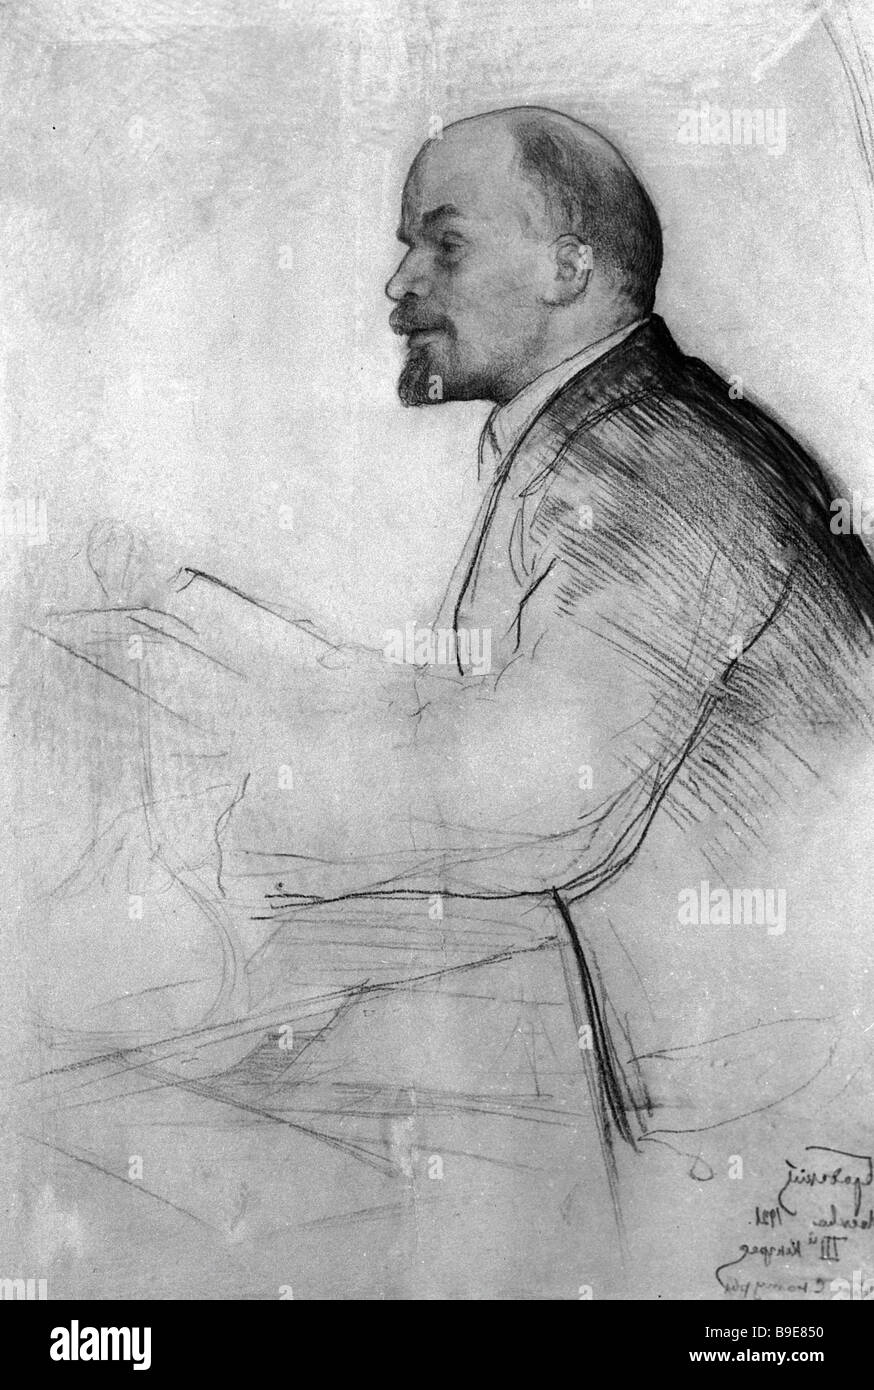 Исаак Бродский портрет Ленина